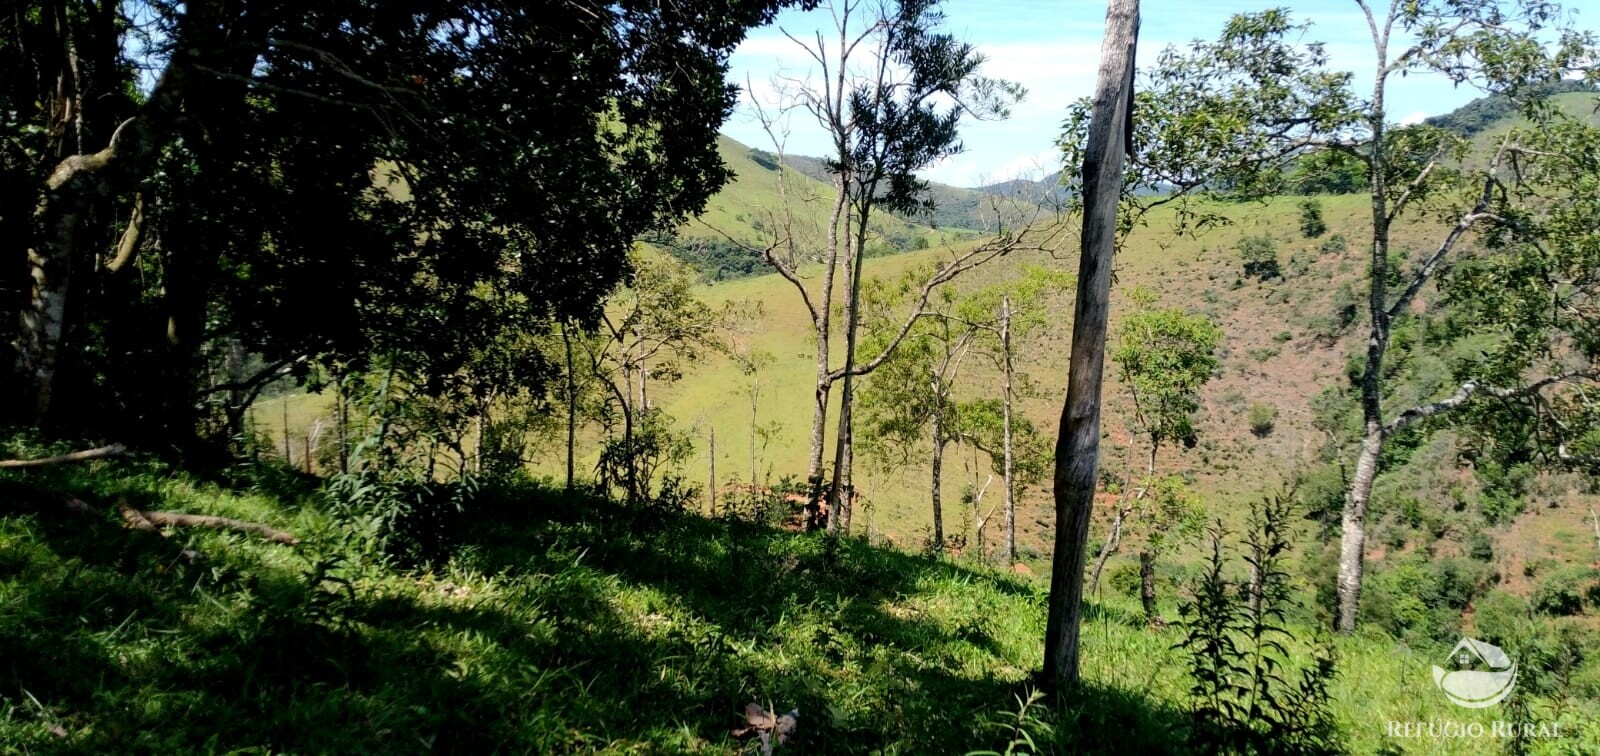 Terreno de 145 ha em Monteiro Lobato, SP